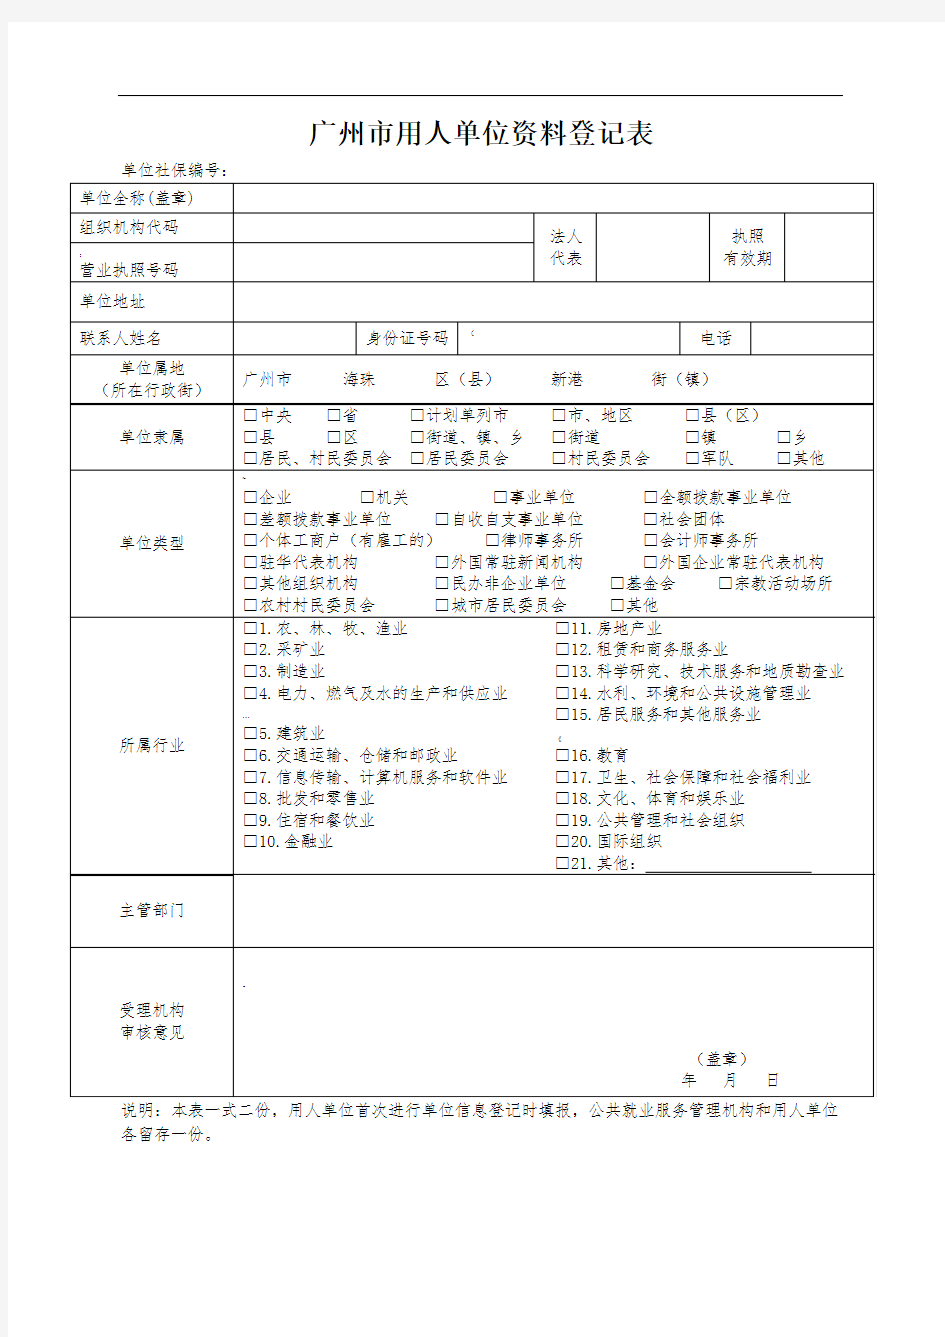 广州市用人单位资料登记表(劳动备案)